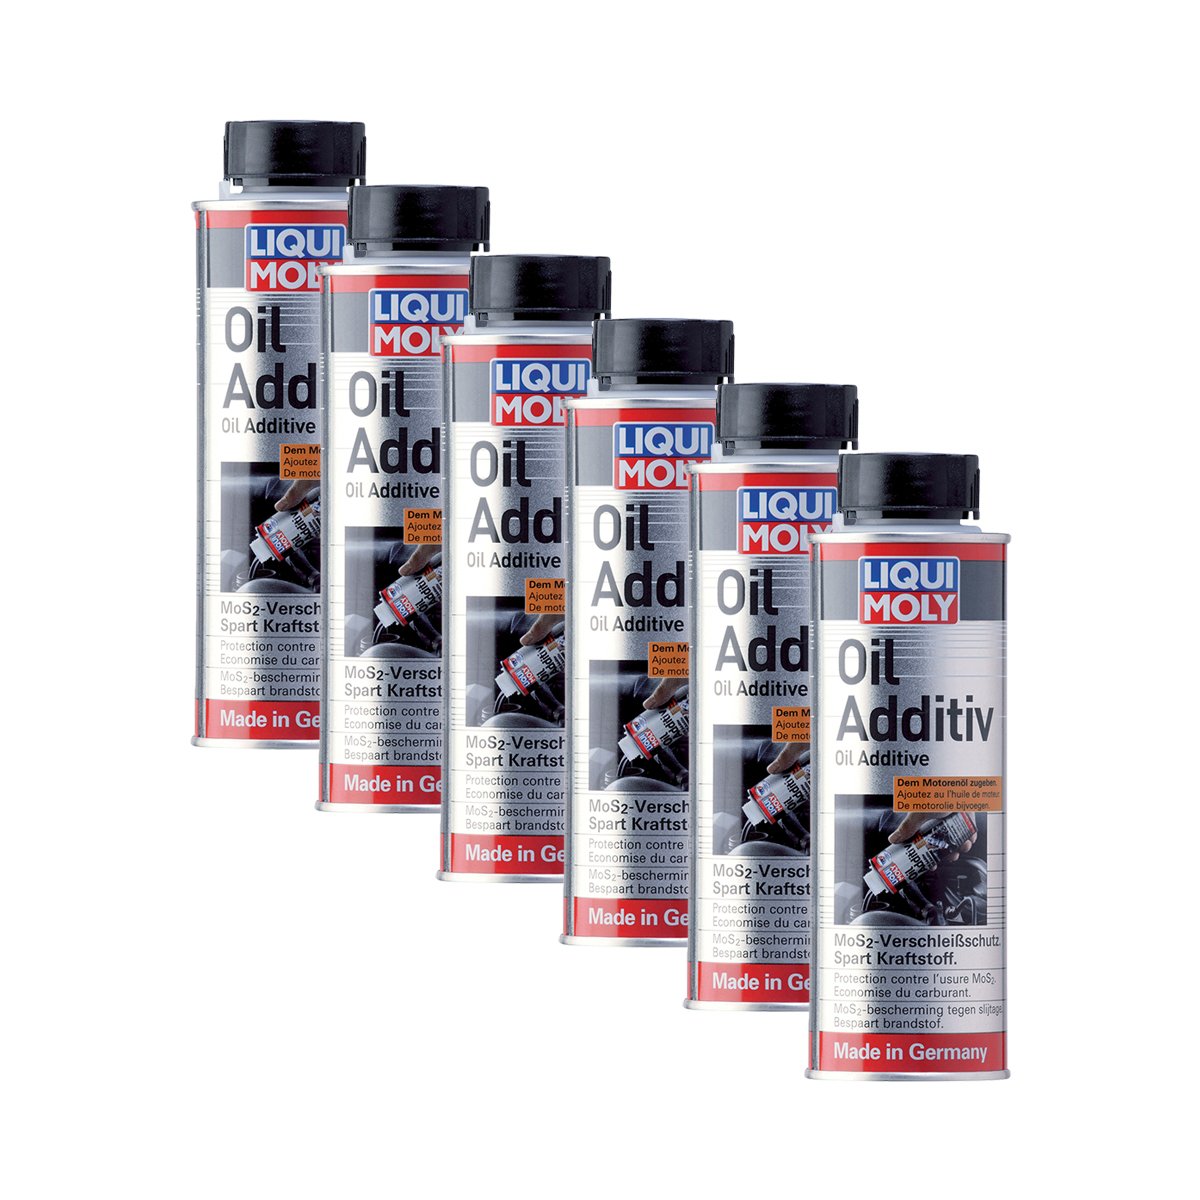 6x LIQUI MOLY 1012 Oil Additiv Öl Zusatz MoS2 Verschleissschutz Öl-Additiv 200 von LIQUI-MOLY_bundle